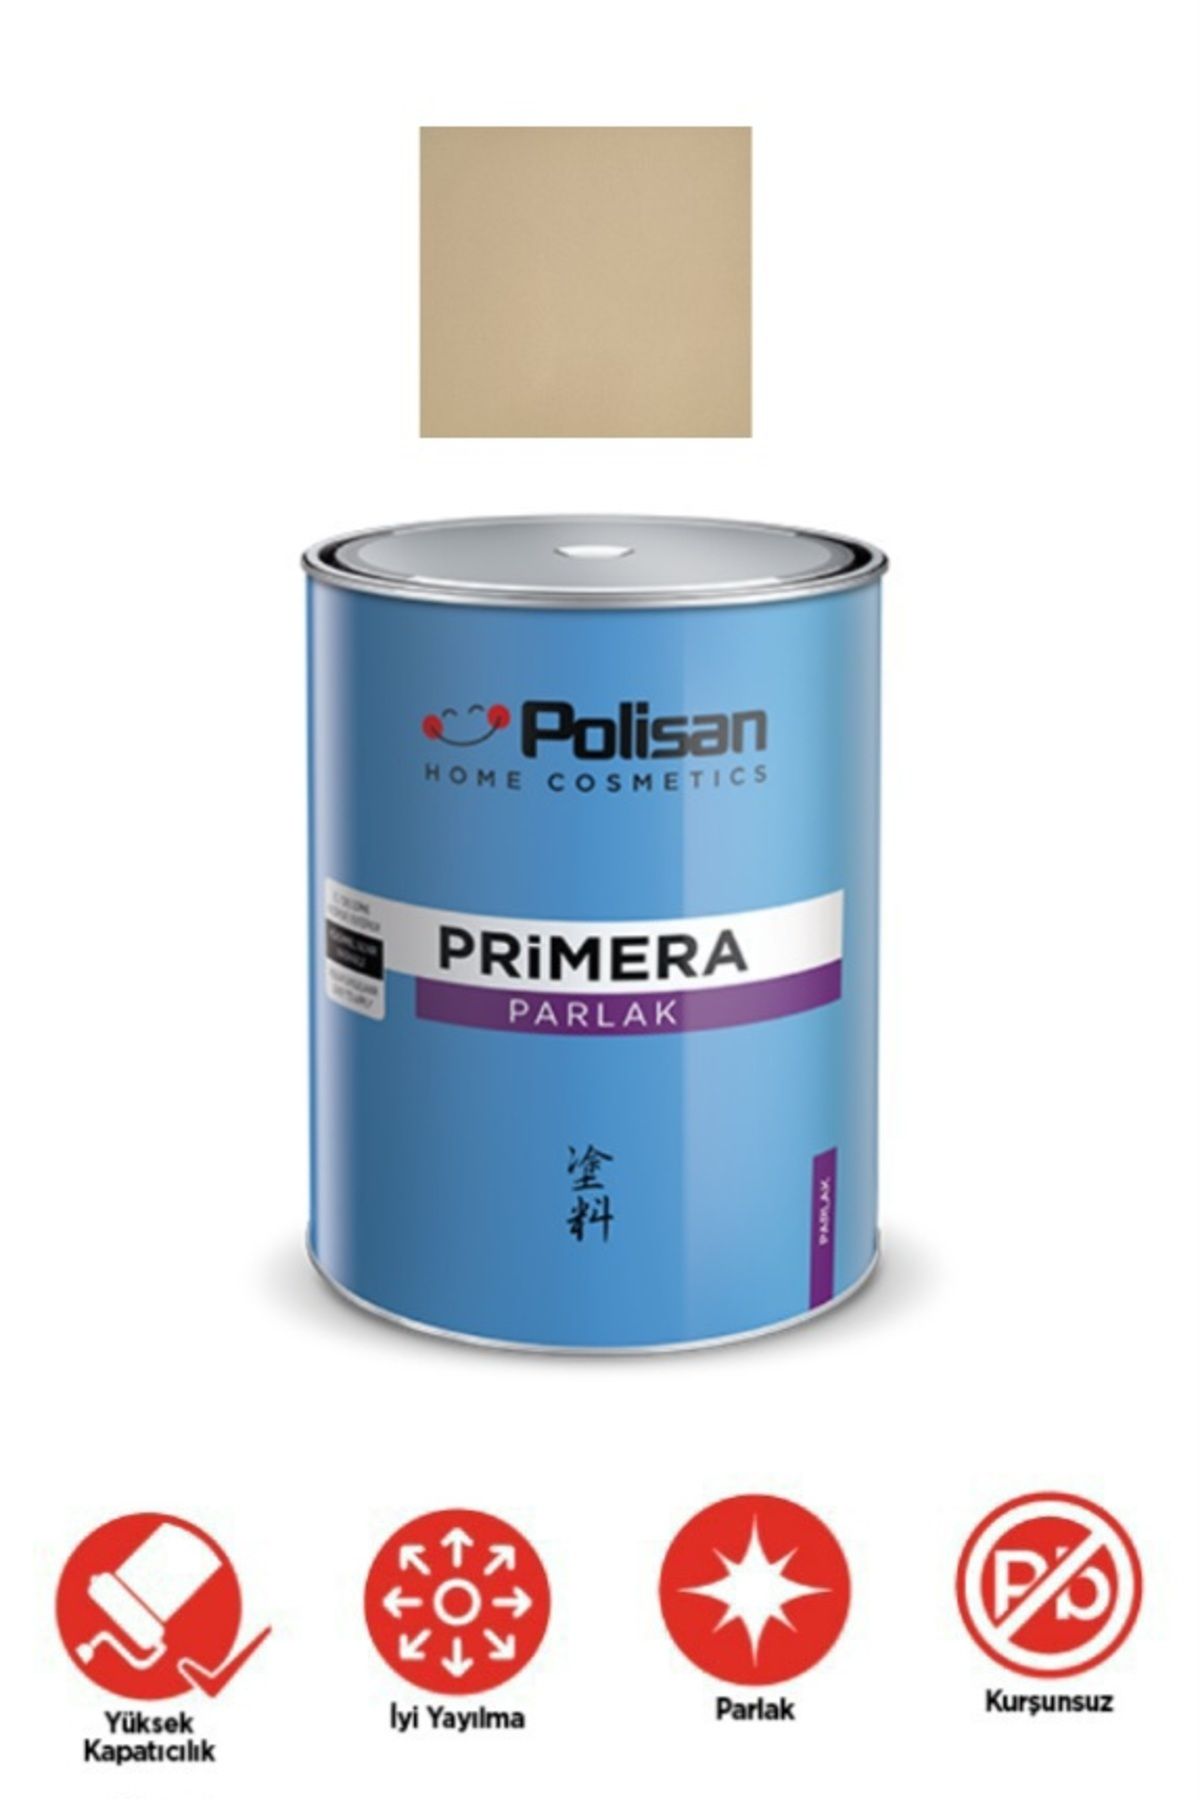 Polisan Primera parlak yağlı boya YENİ ŞAMPANYA 1730 0.75L